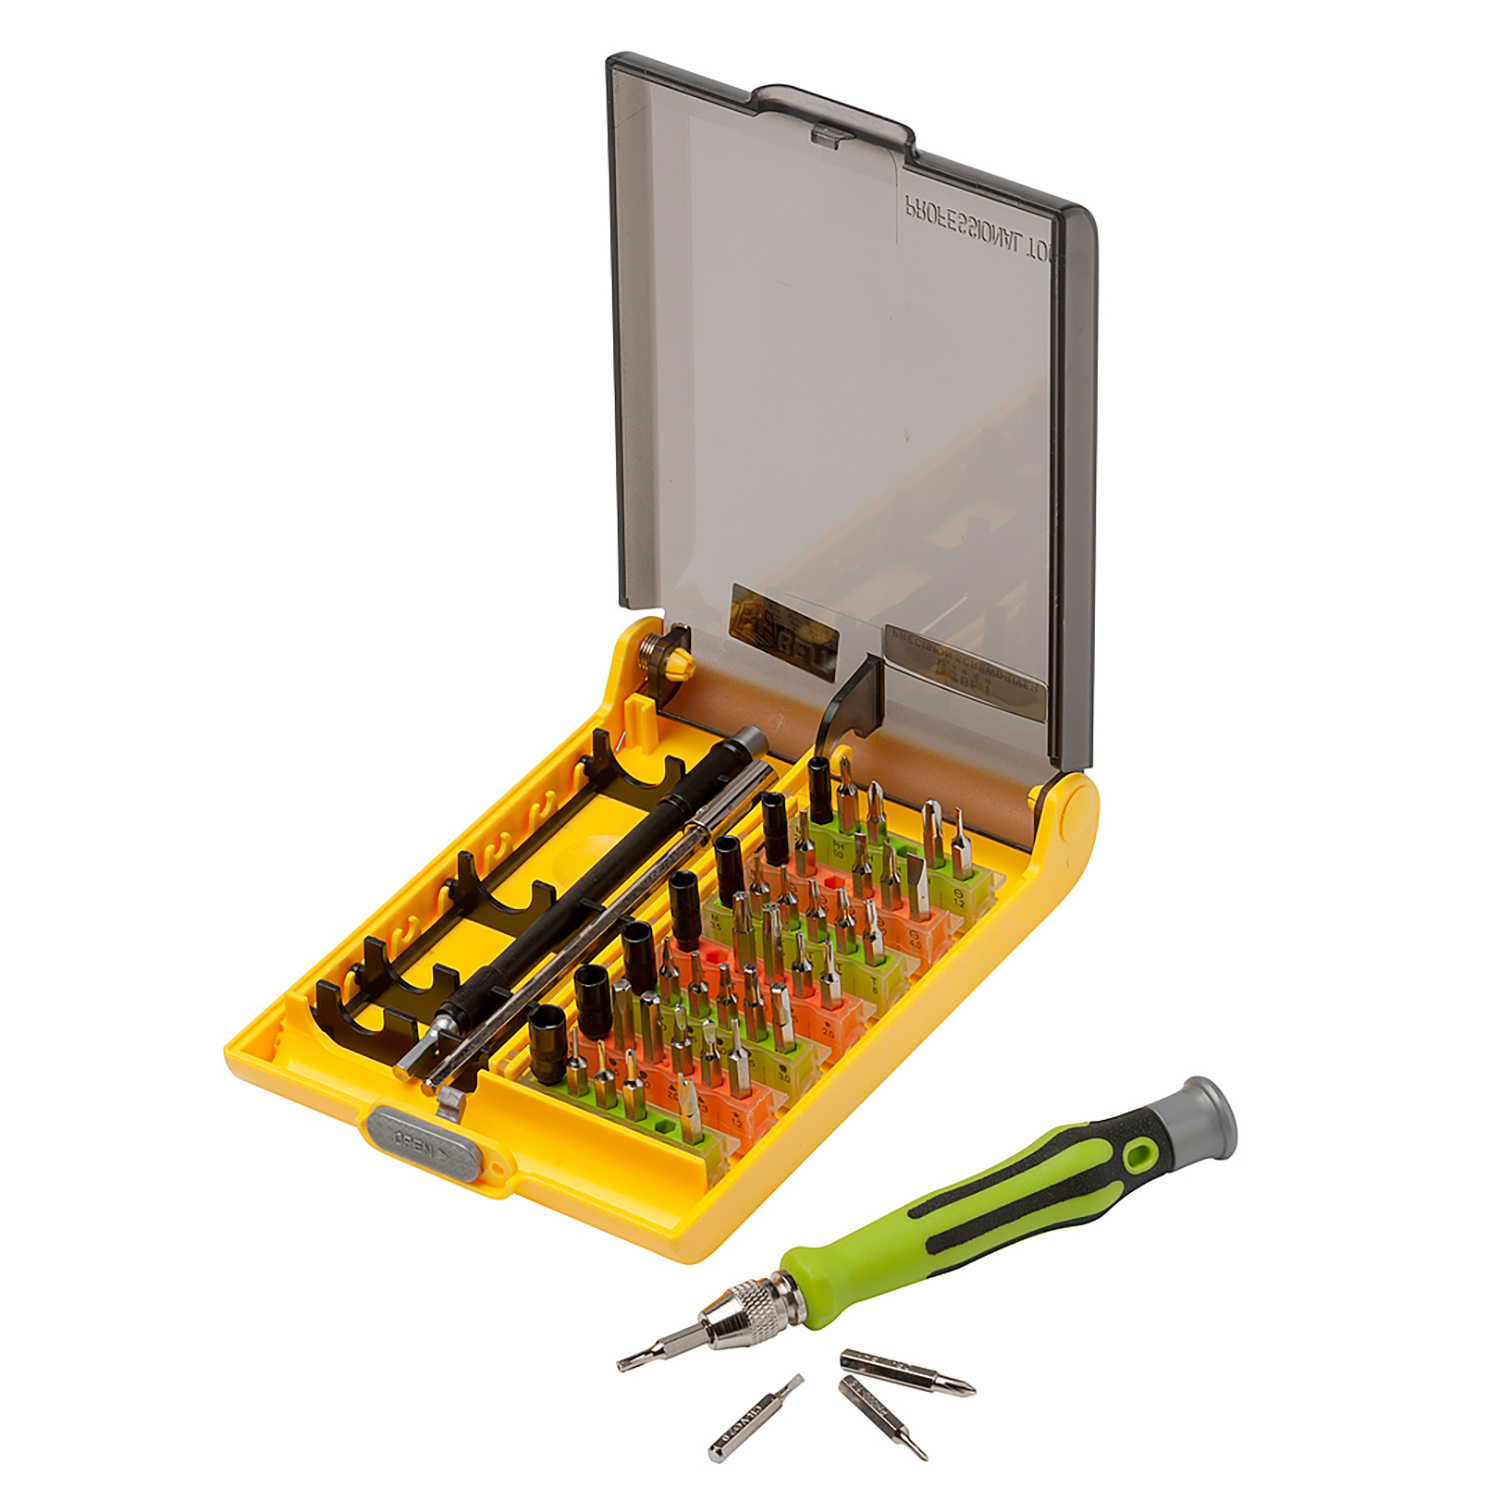 9in1 Öffnung Reparieren pentalobe Schraubendreher Werkzeuge Set Kit Für iPhone 4 